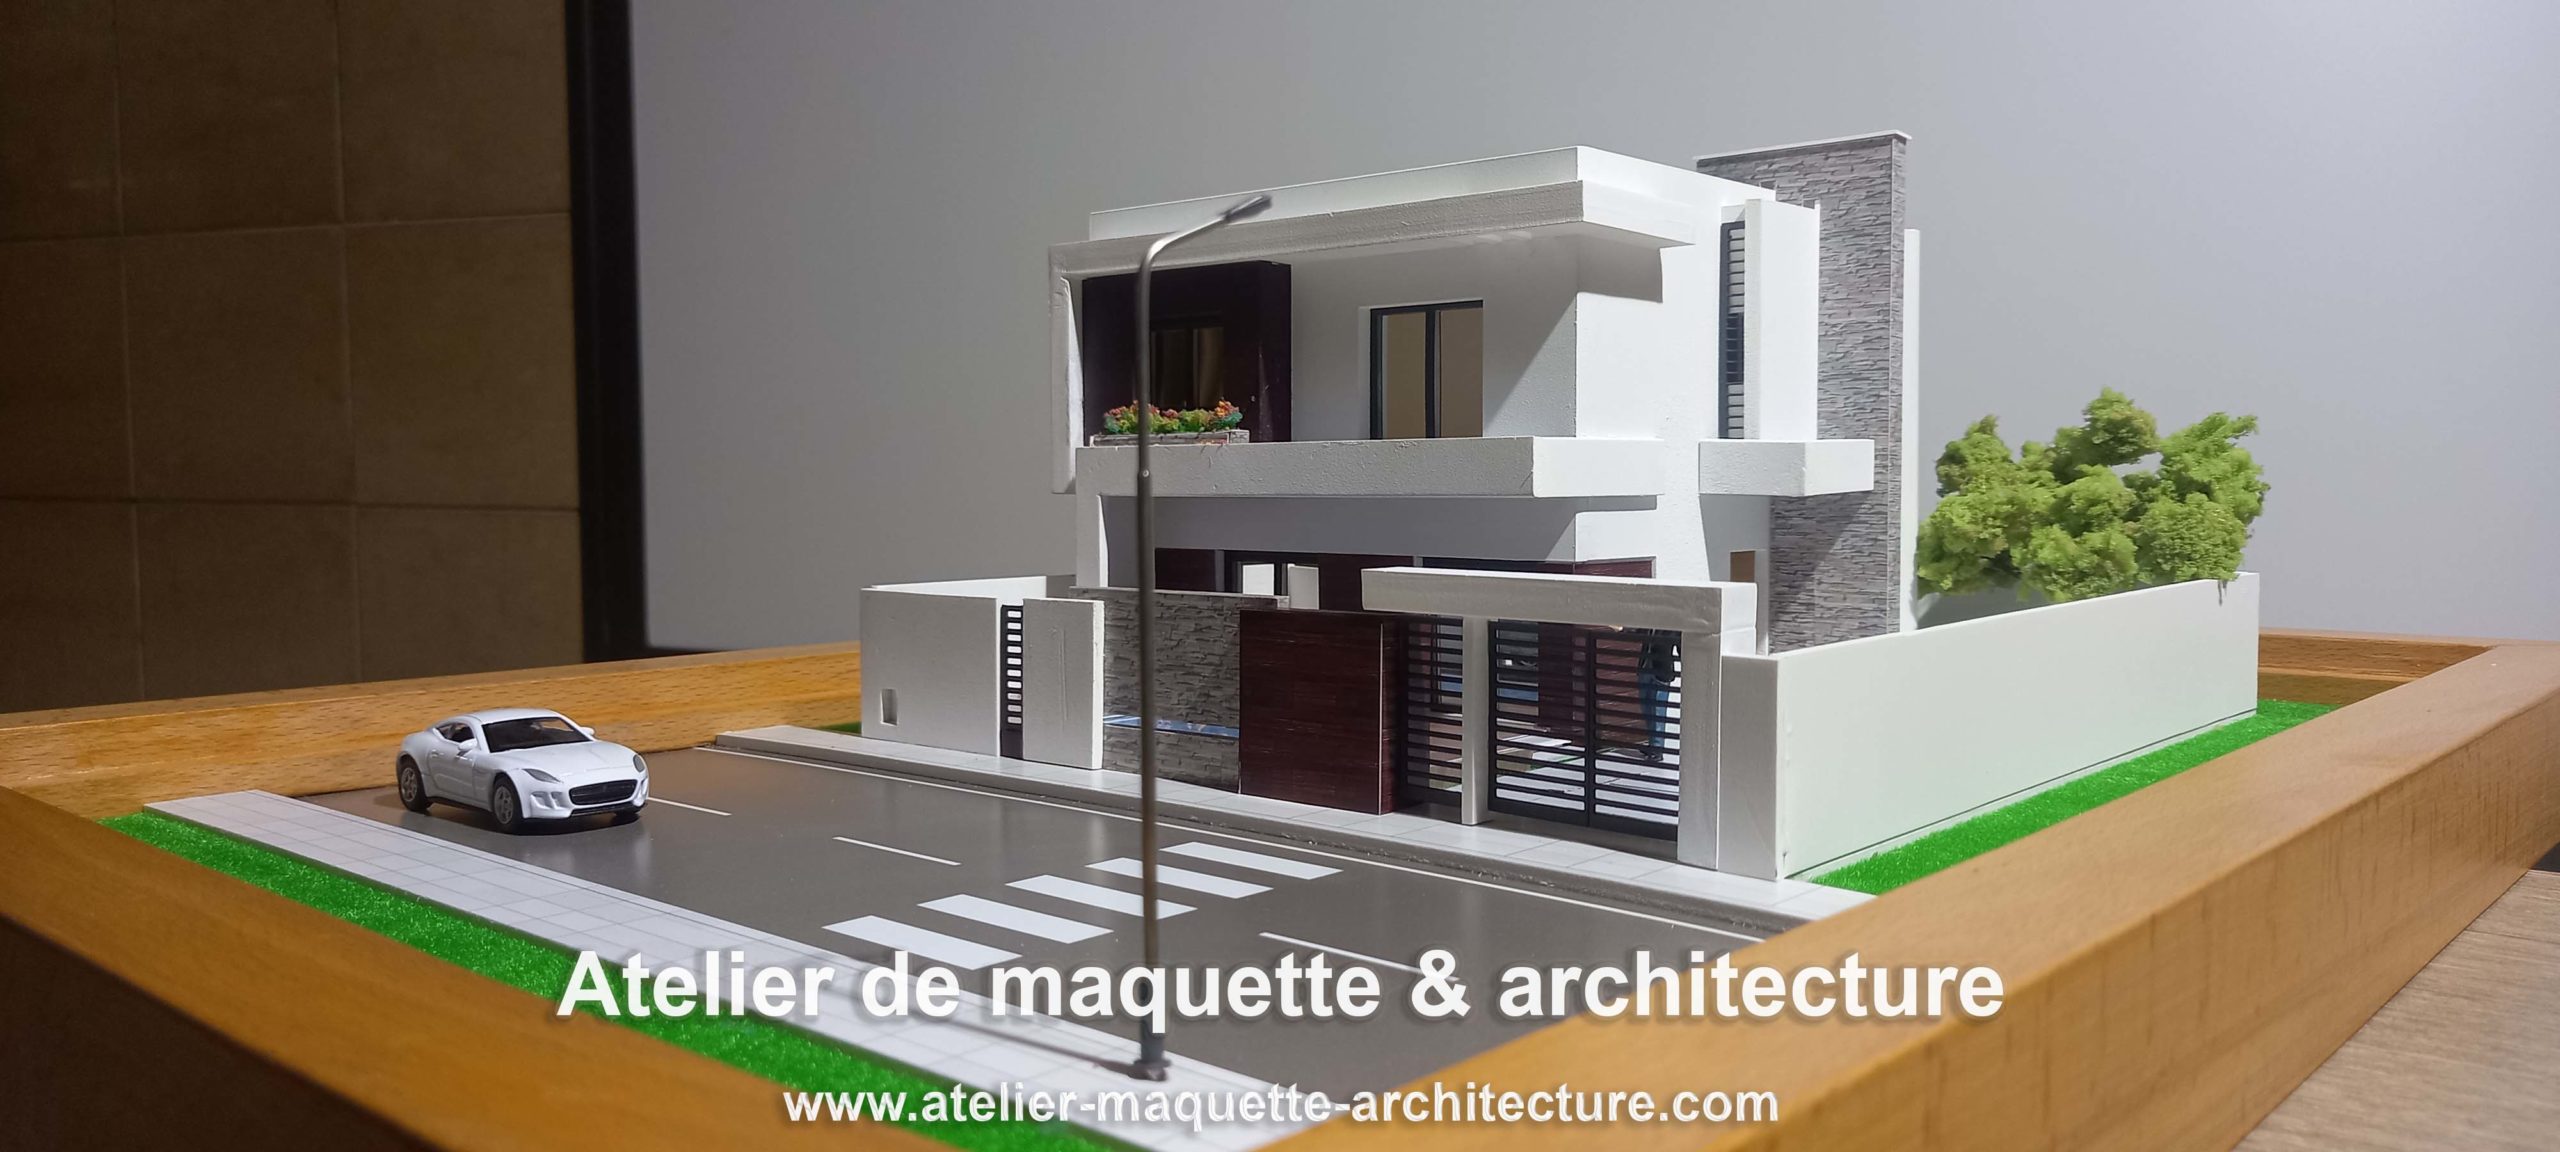 Maquette architecture-promotion immobilière-maquettes d'architecture